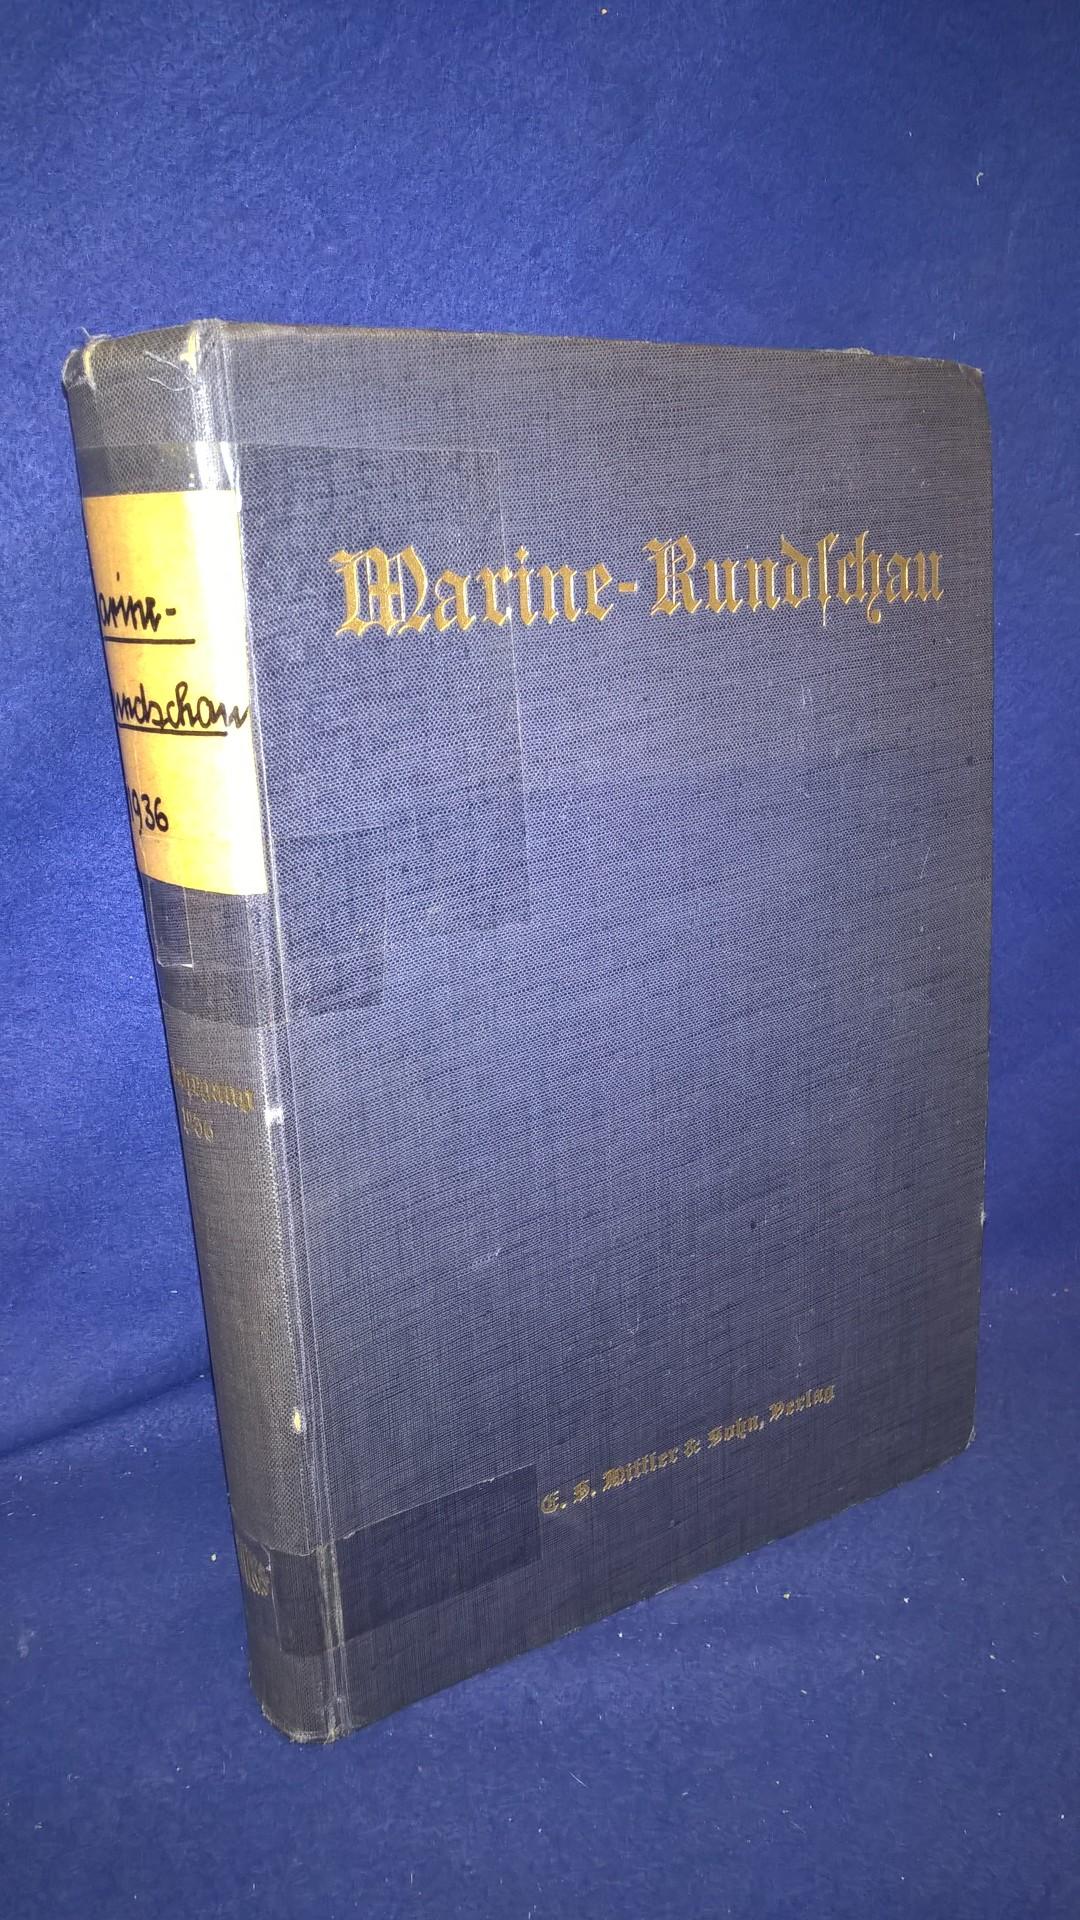 Marine-Rundschau, Monatsschrift für Seewesen. Kompletter Jahresband 1936.